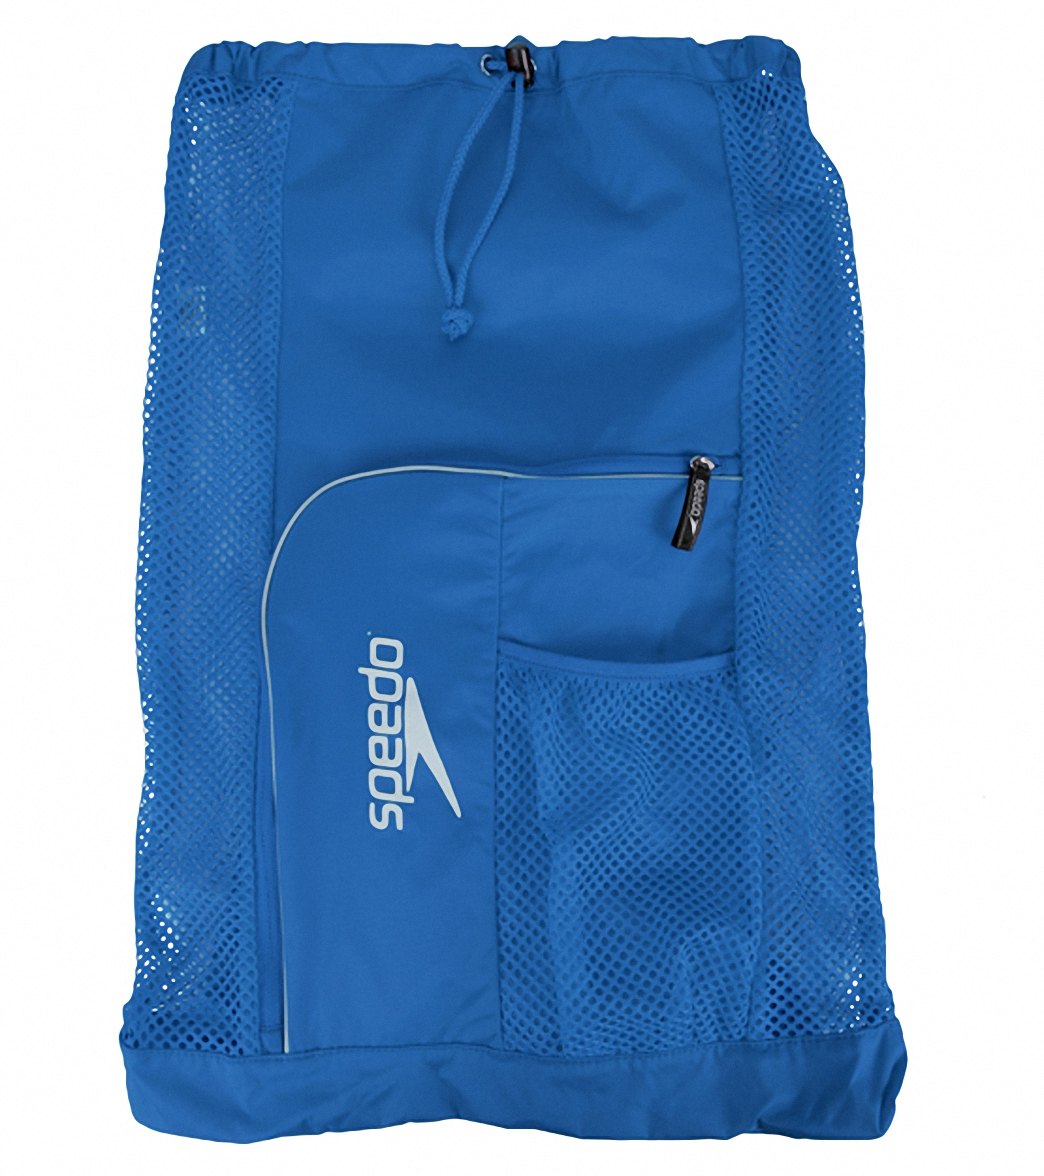 Speedo Deluxe Ventilator Mesh Bag - Imperial Blue - Swimoutlet.com